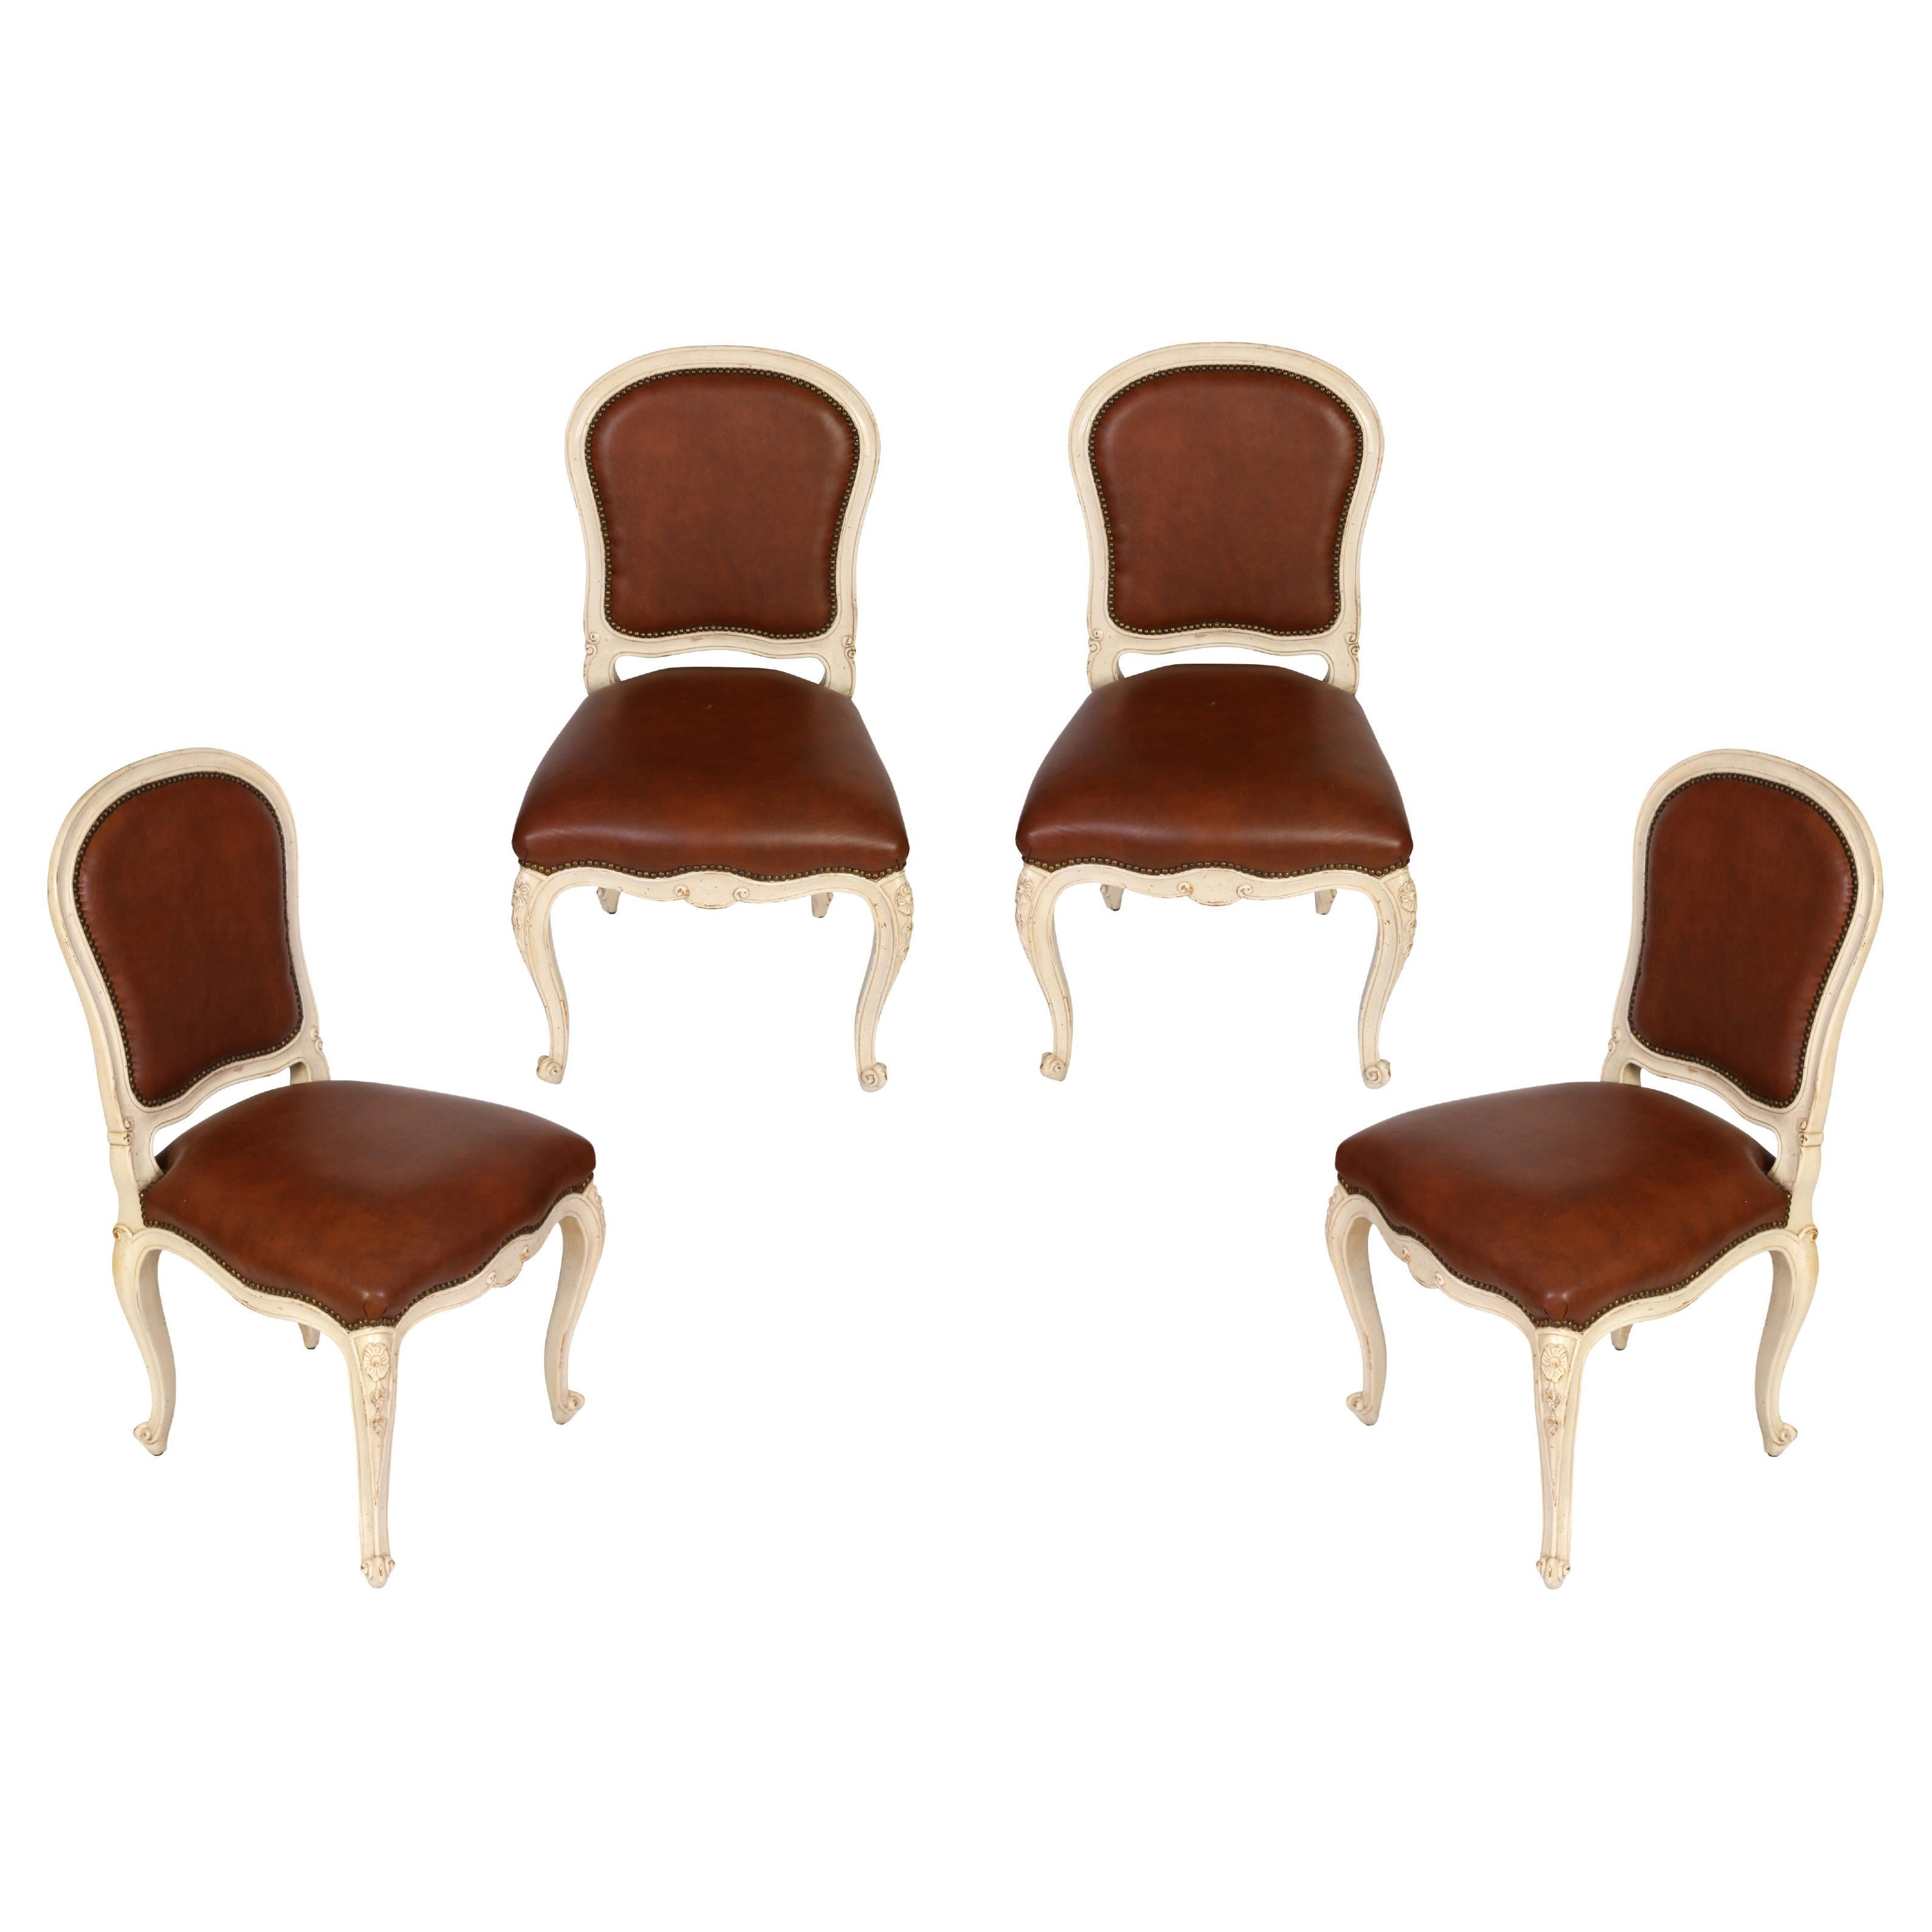 Satz von vier bemalten Beistellstühlen im Louis-XV-Stil mit braunem Leder